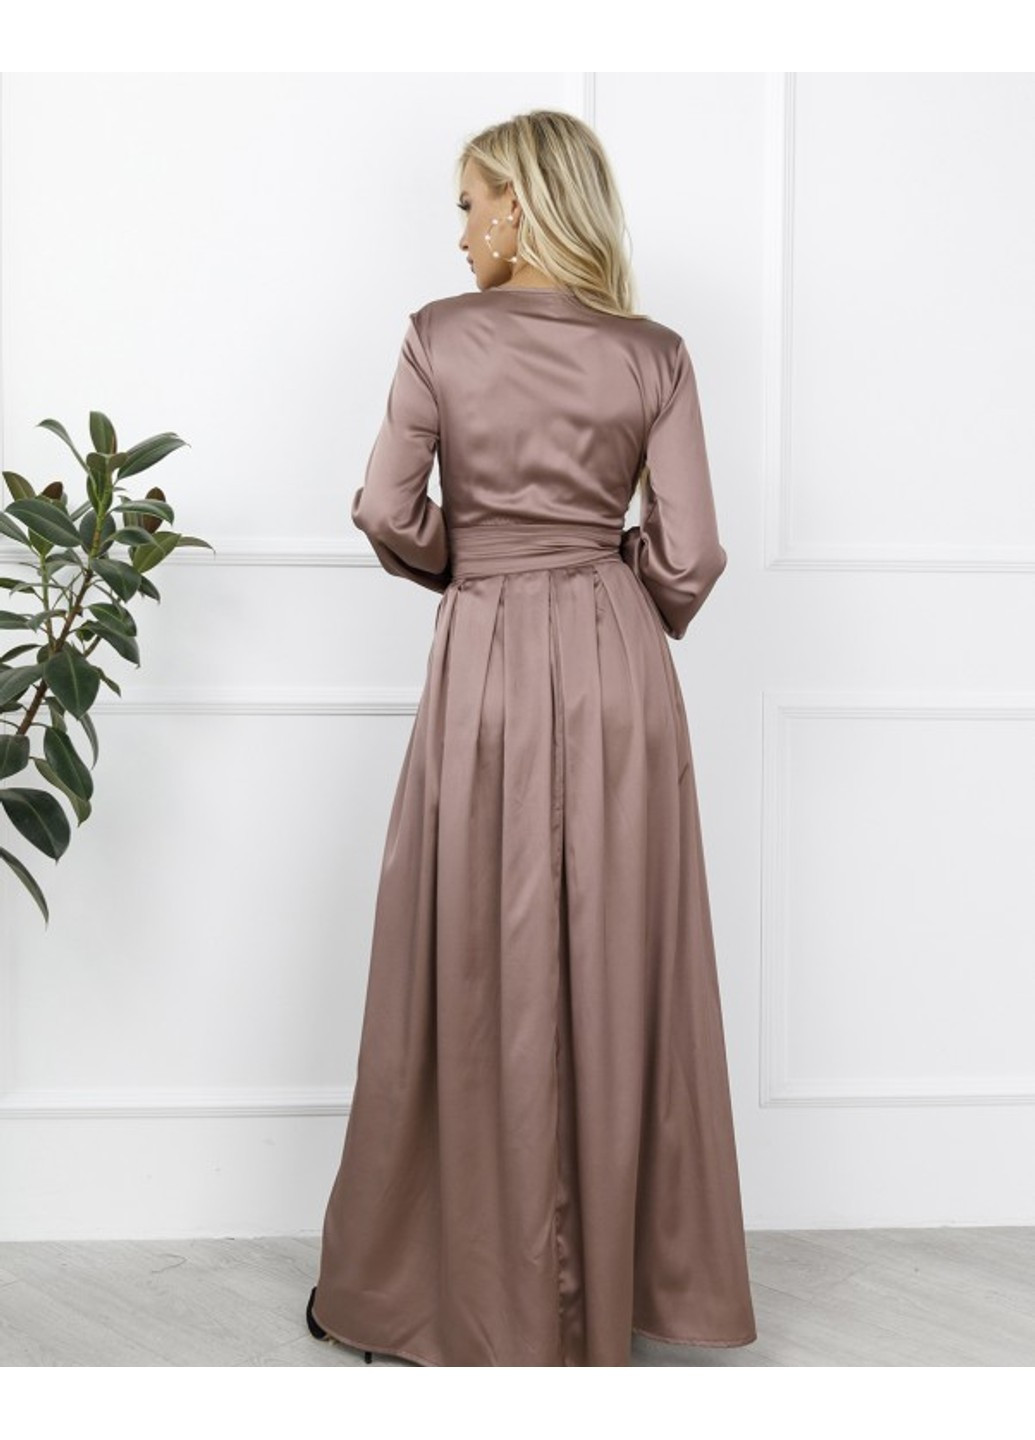 Светло-коричневое вечернее платья 12273 светло-коричневый ISSA PLUS